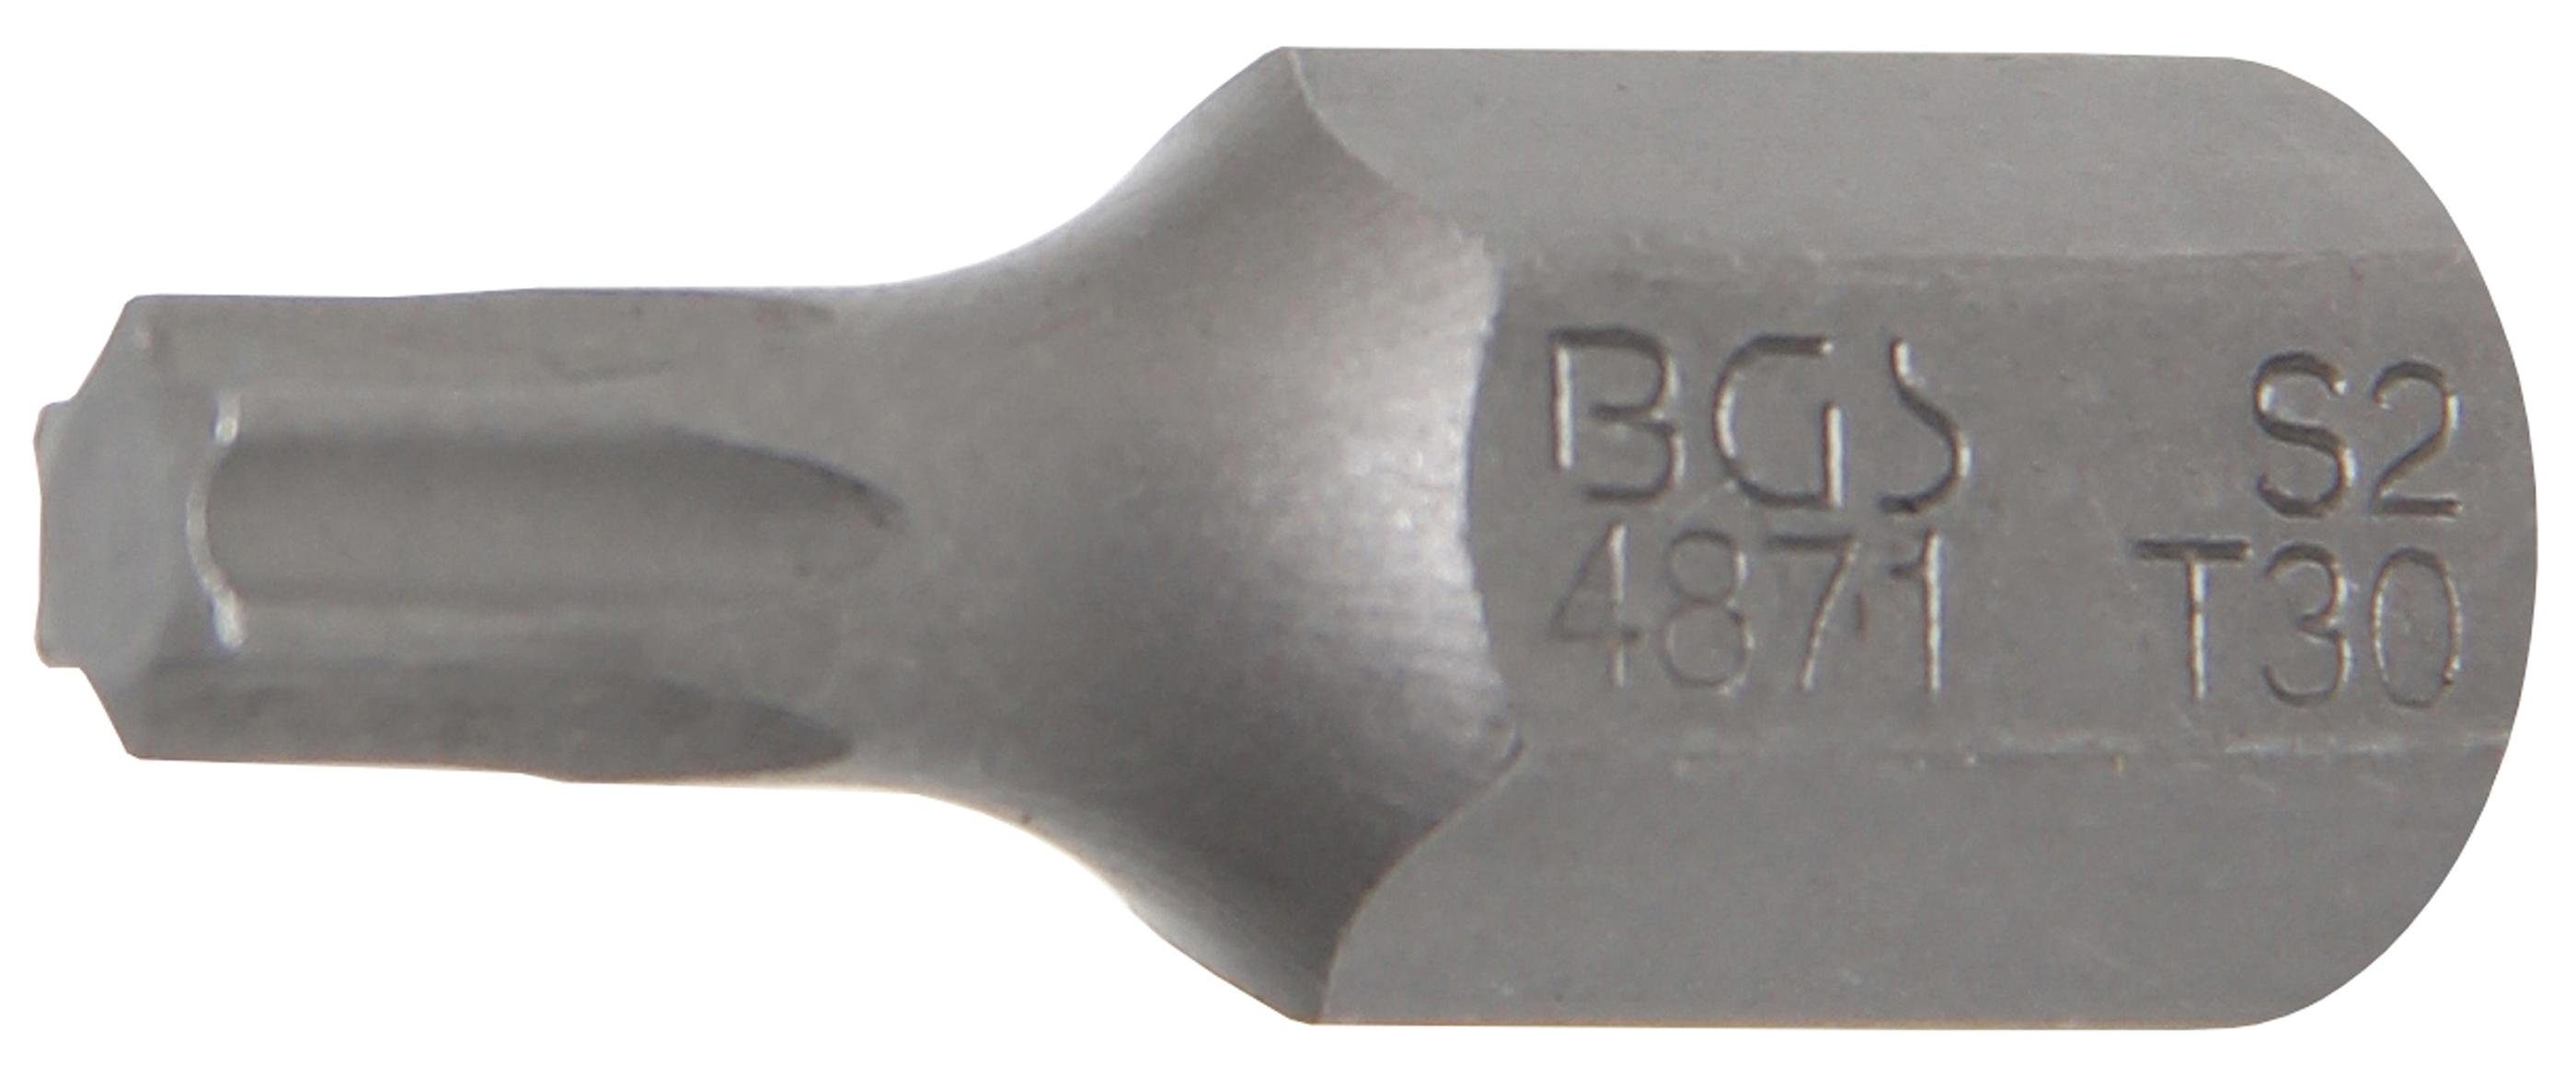 BGS technic Bit-Schraubendreher Bit, Antrieb Außensechskant 10 mm (3/8), T-Profil (für Torx) T30